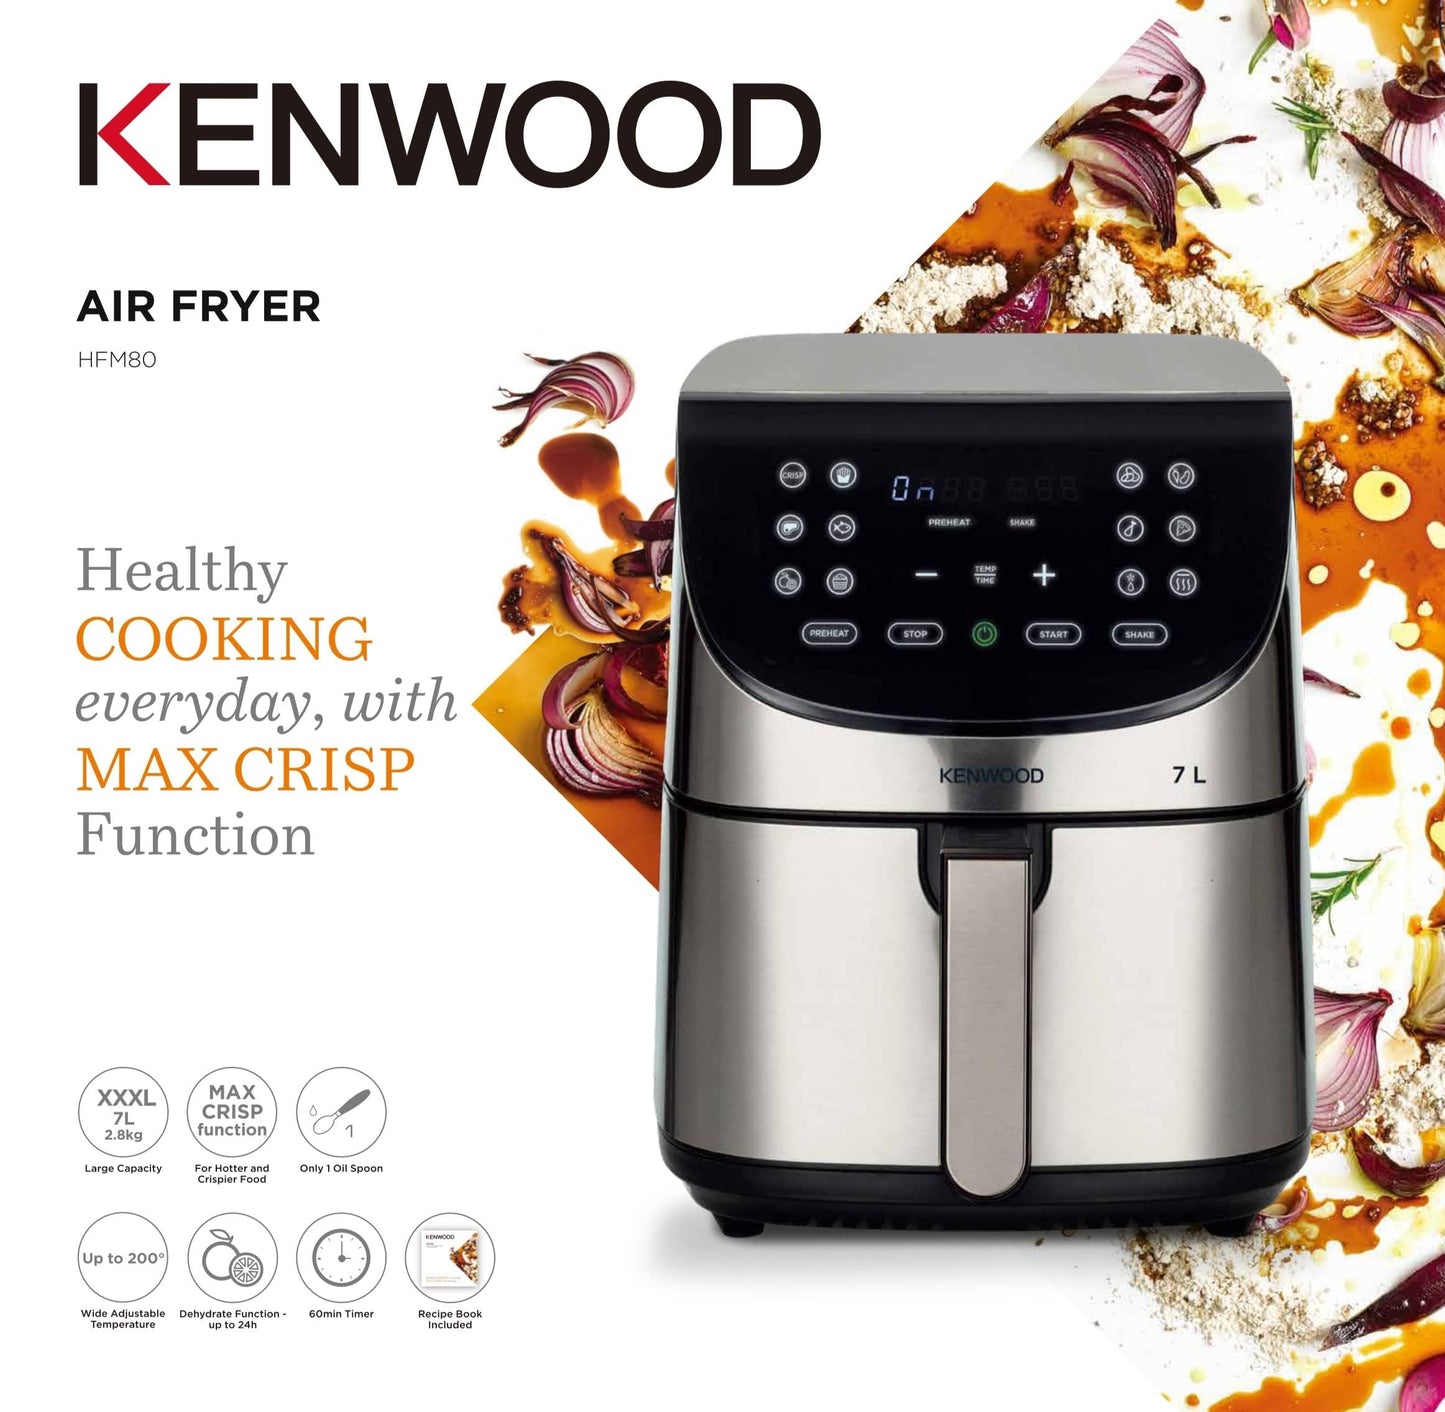 Kenwood - Air Fryer, 1800 Watt, 7 Liters, Silver